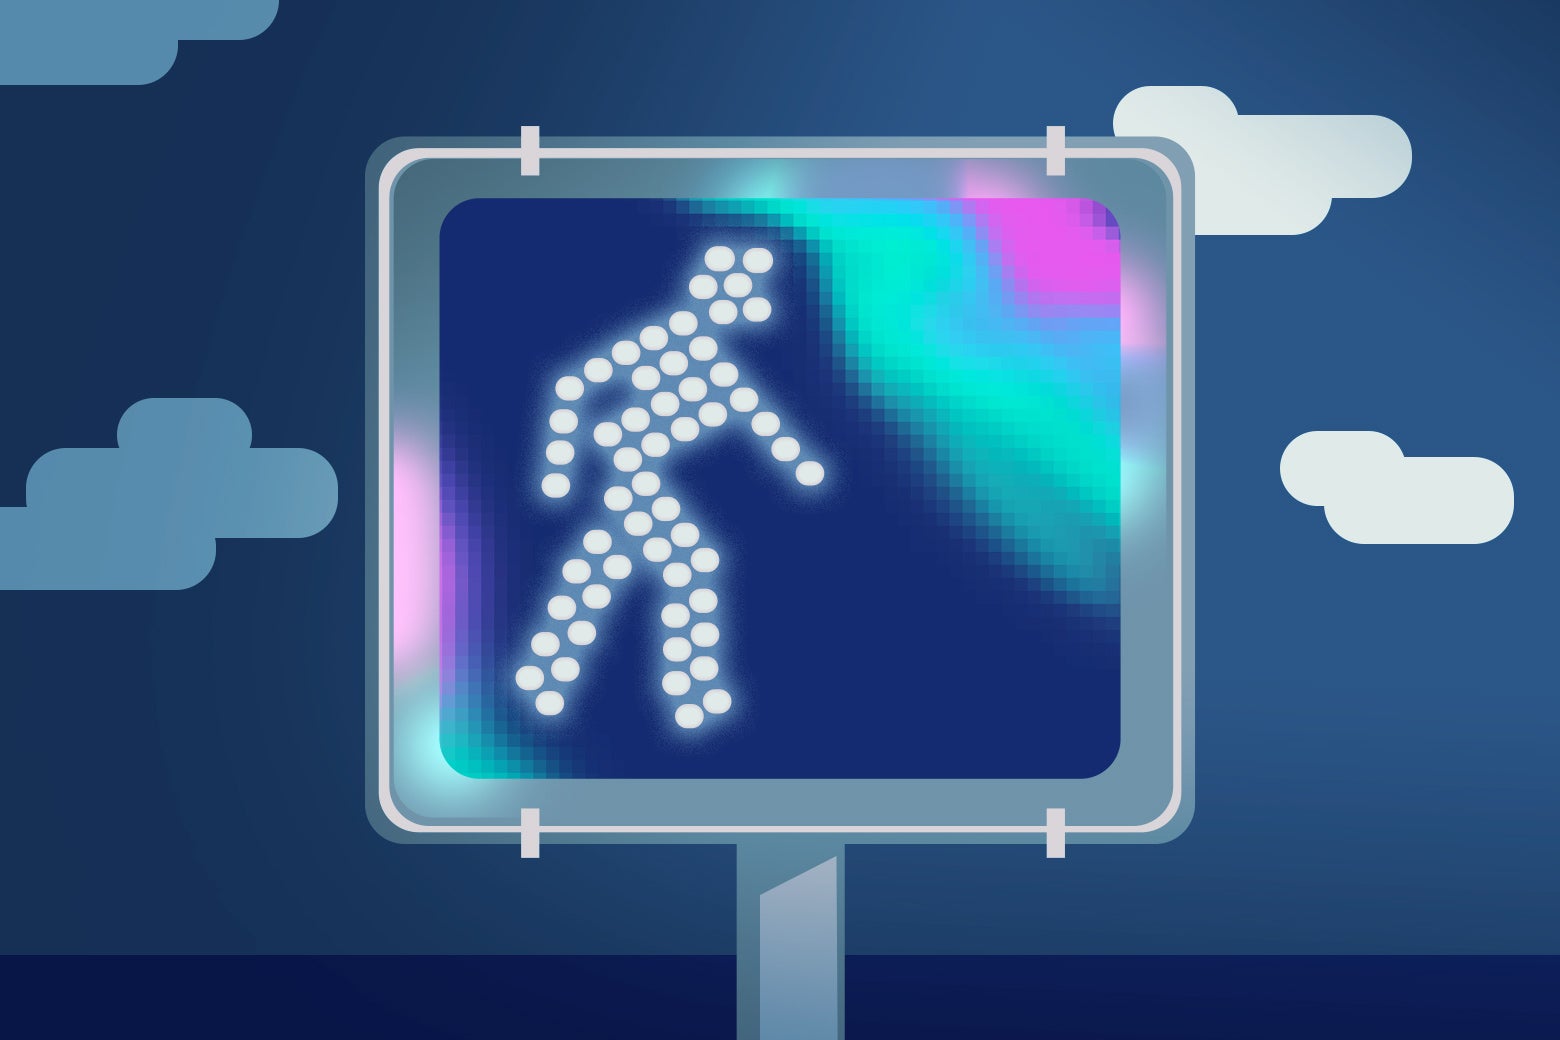 A pixelated walking pedestrian signal